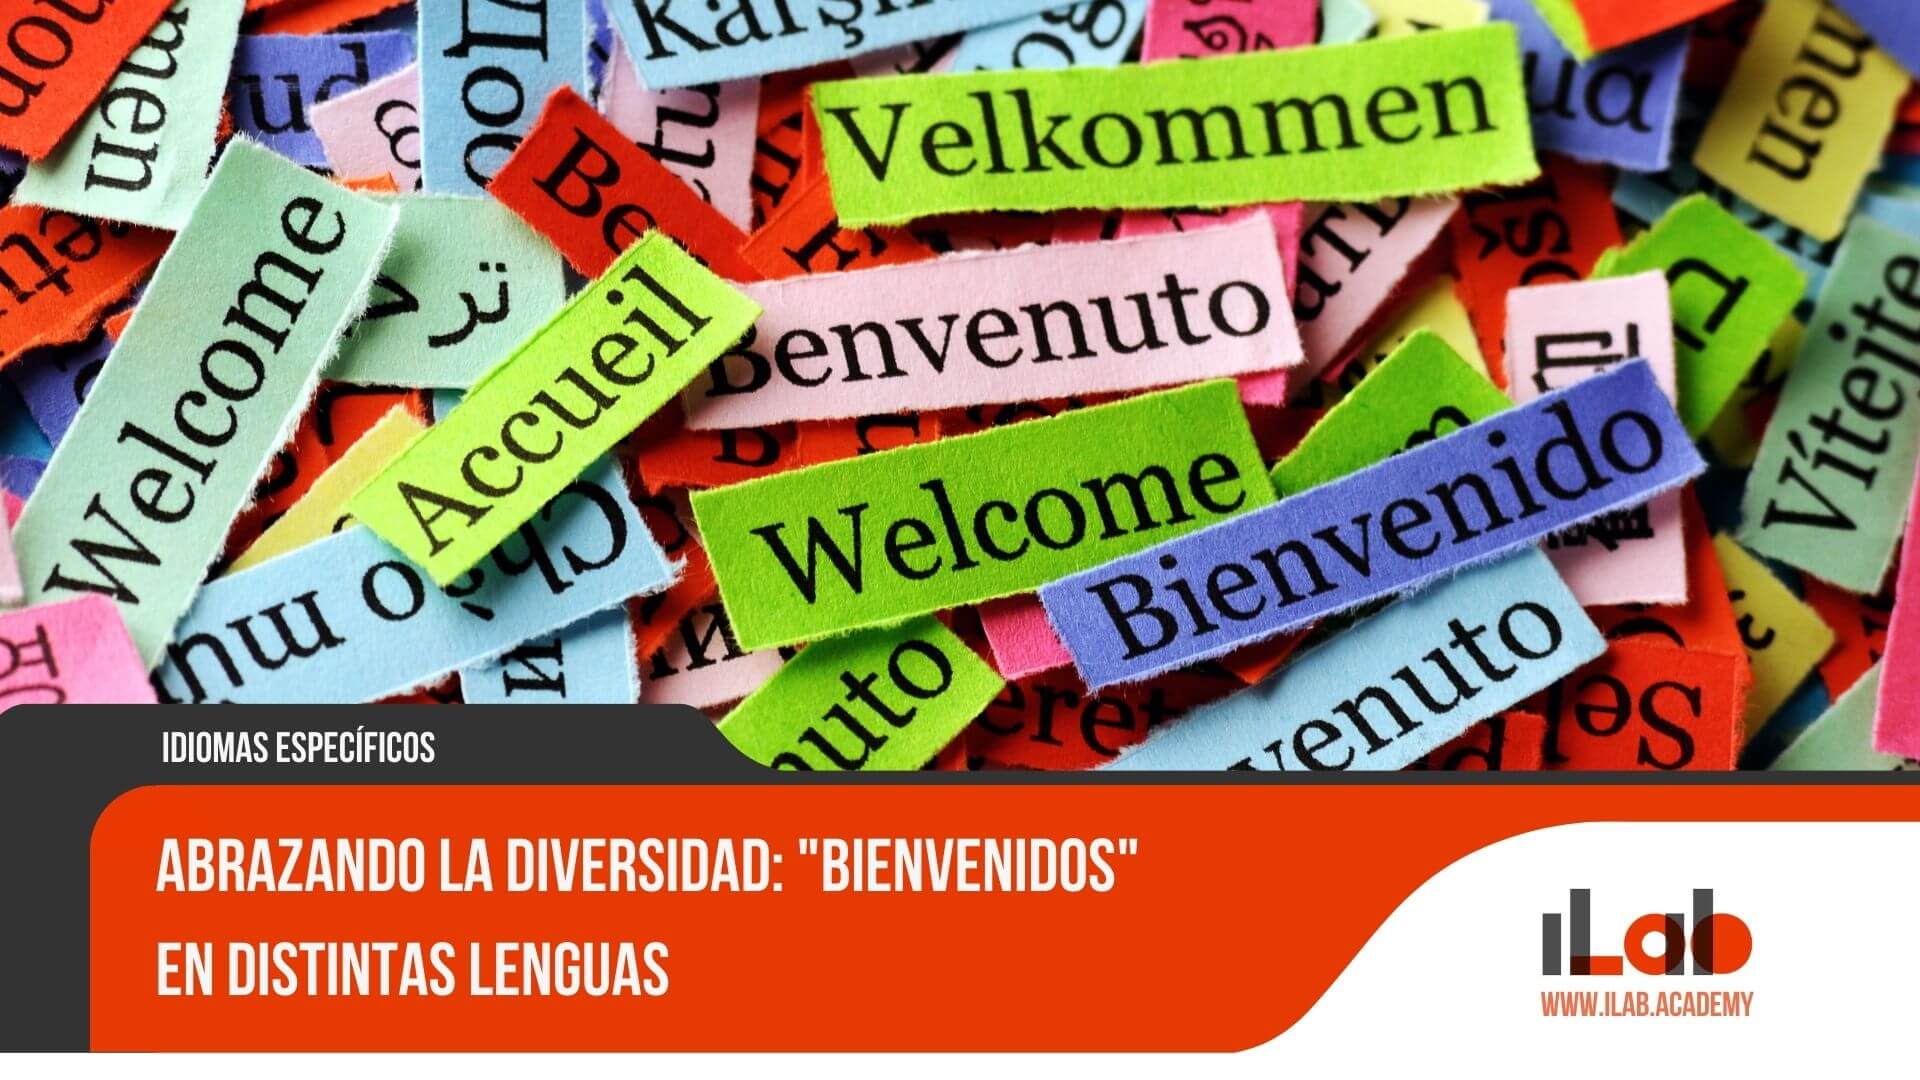 Abrazando la diversidad: "Bienvenidos" en distintas lenguas